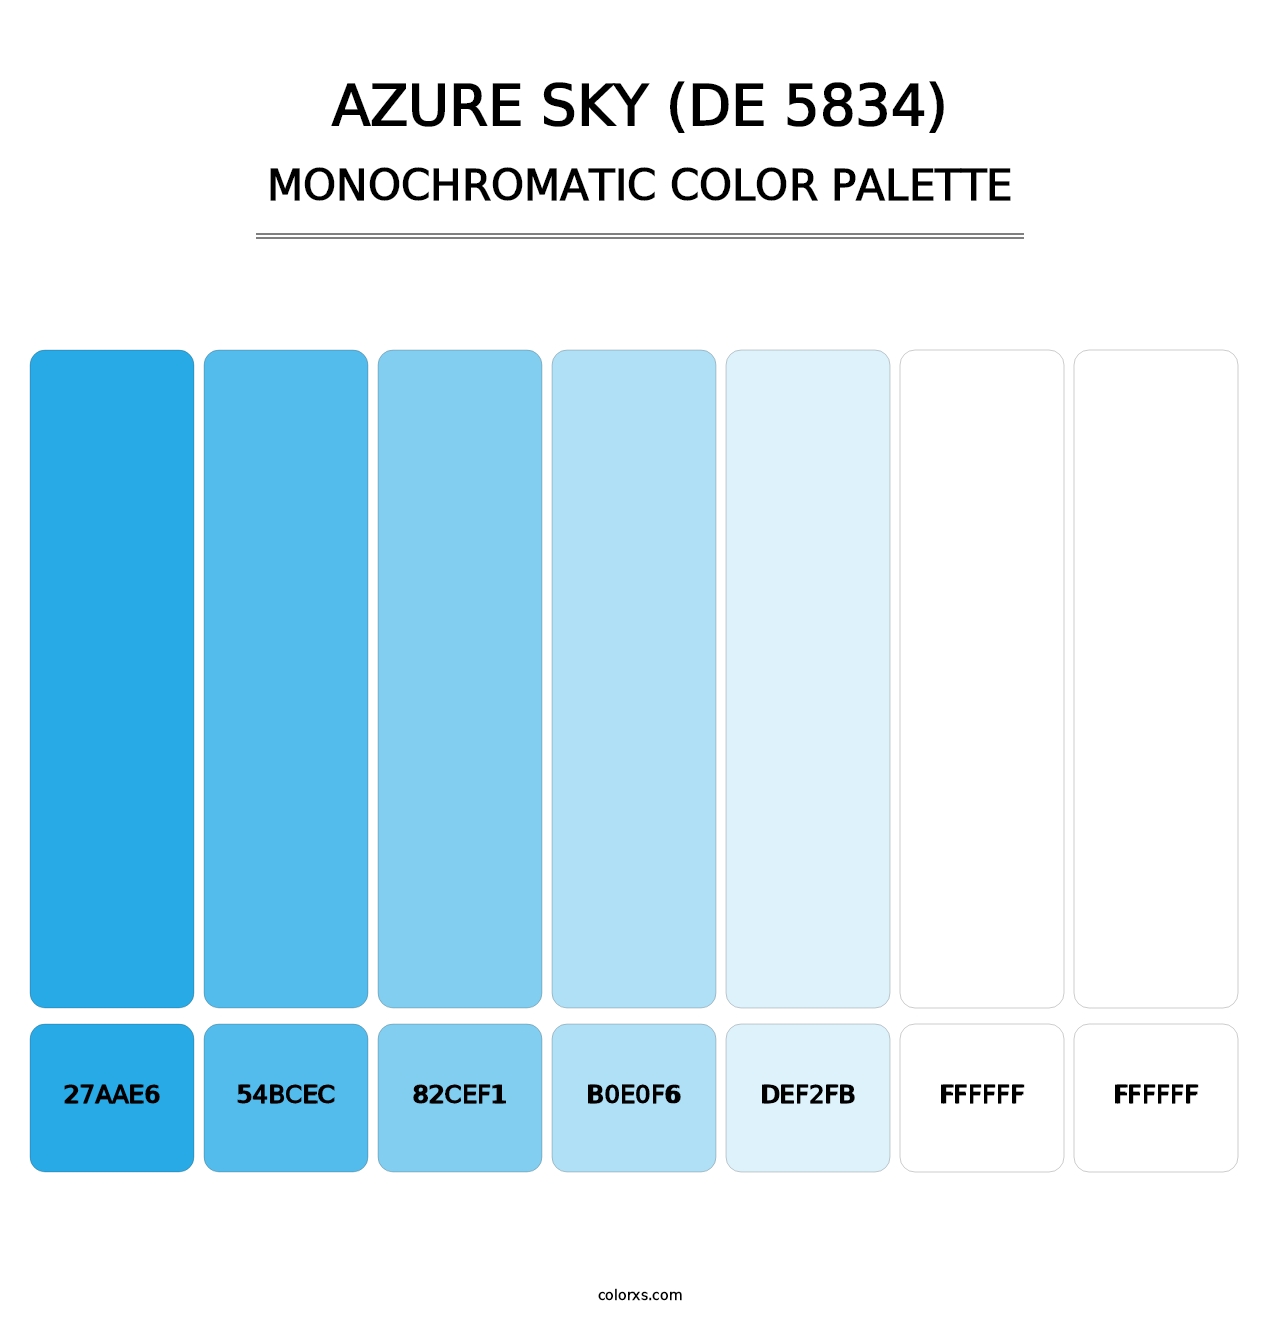 Azure Sky (DE 5834) - Monochromatic Color Palette